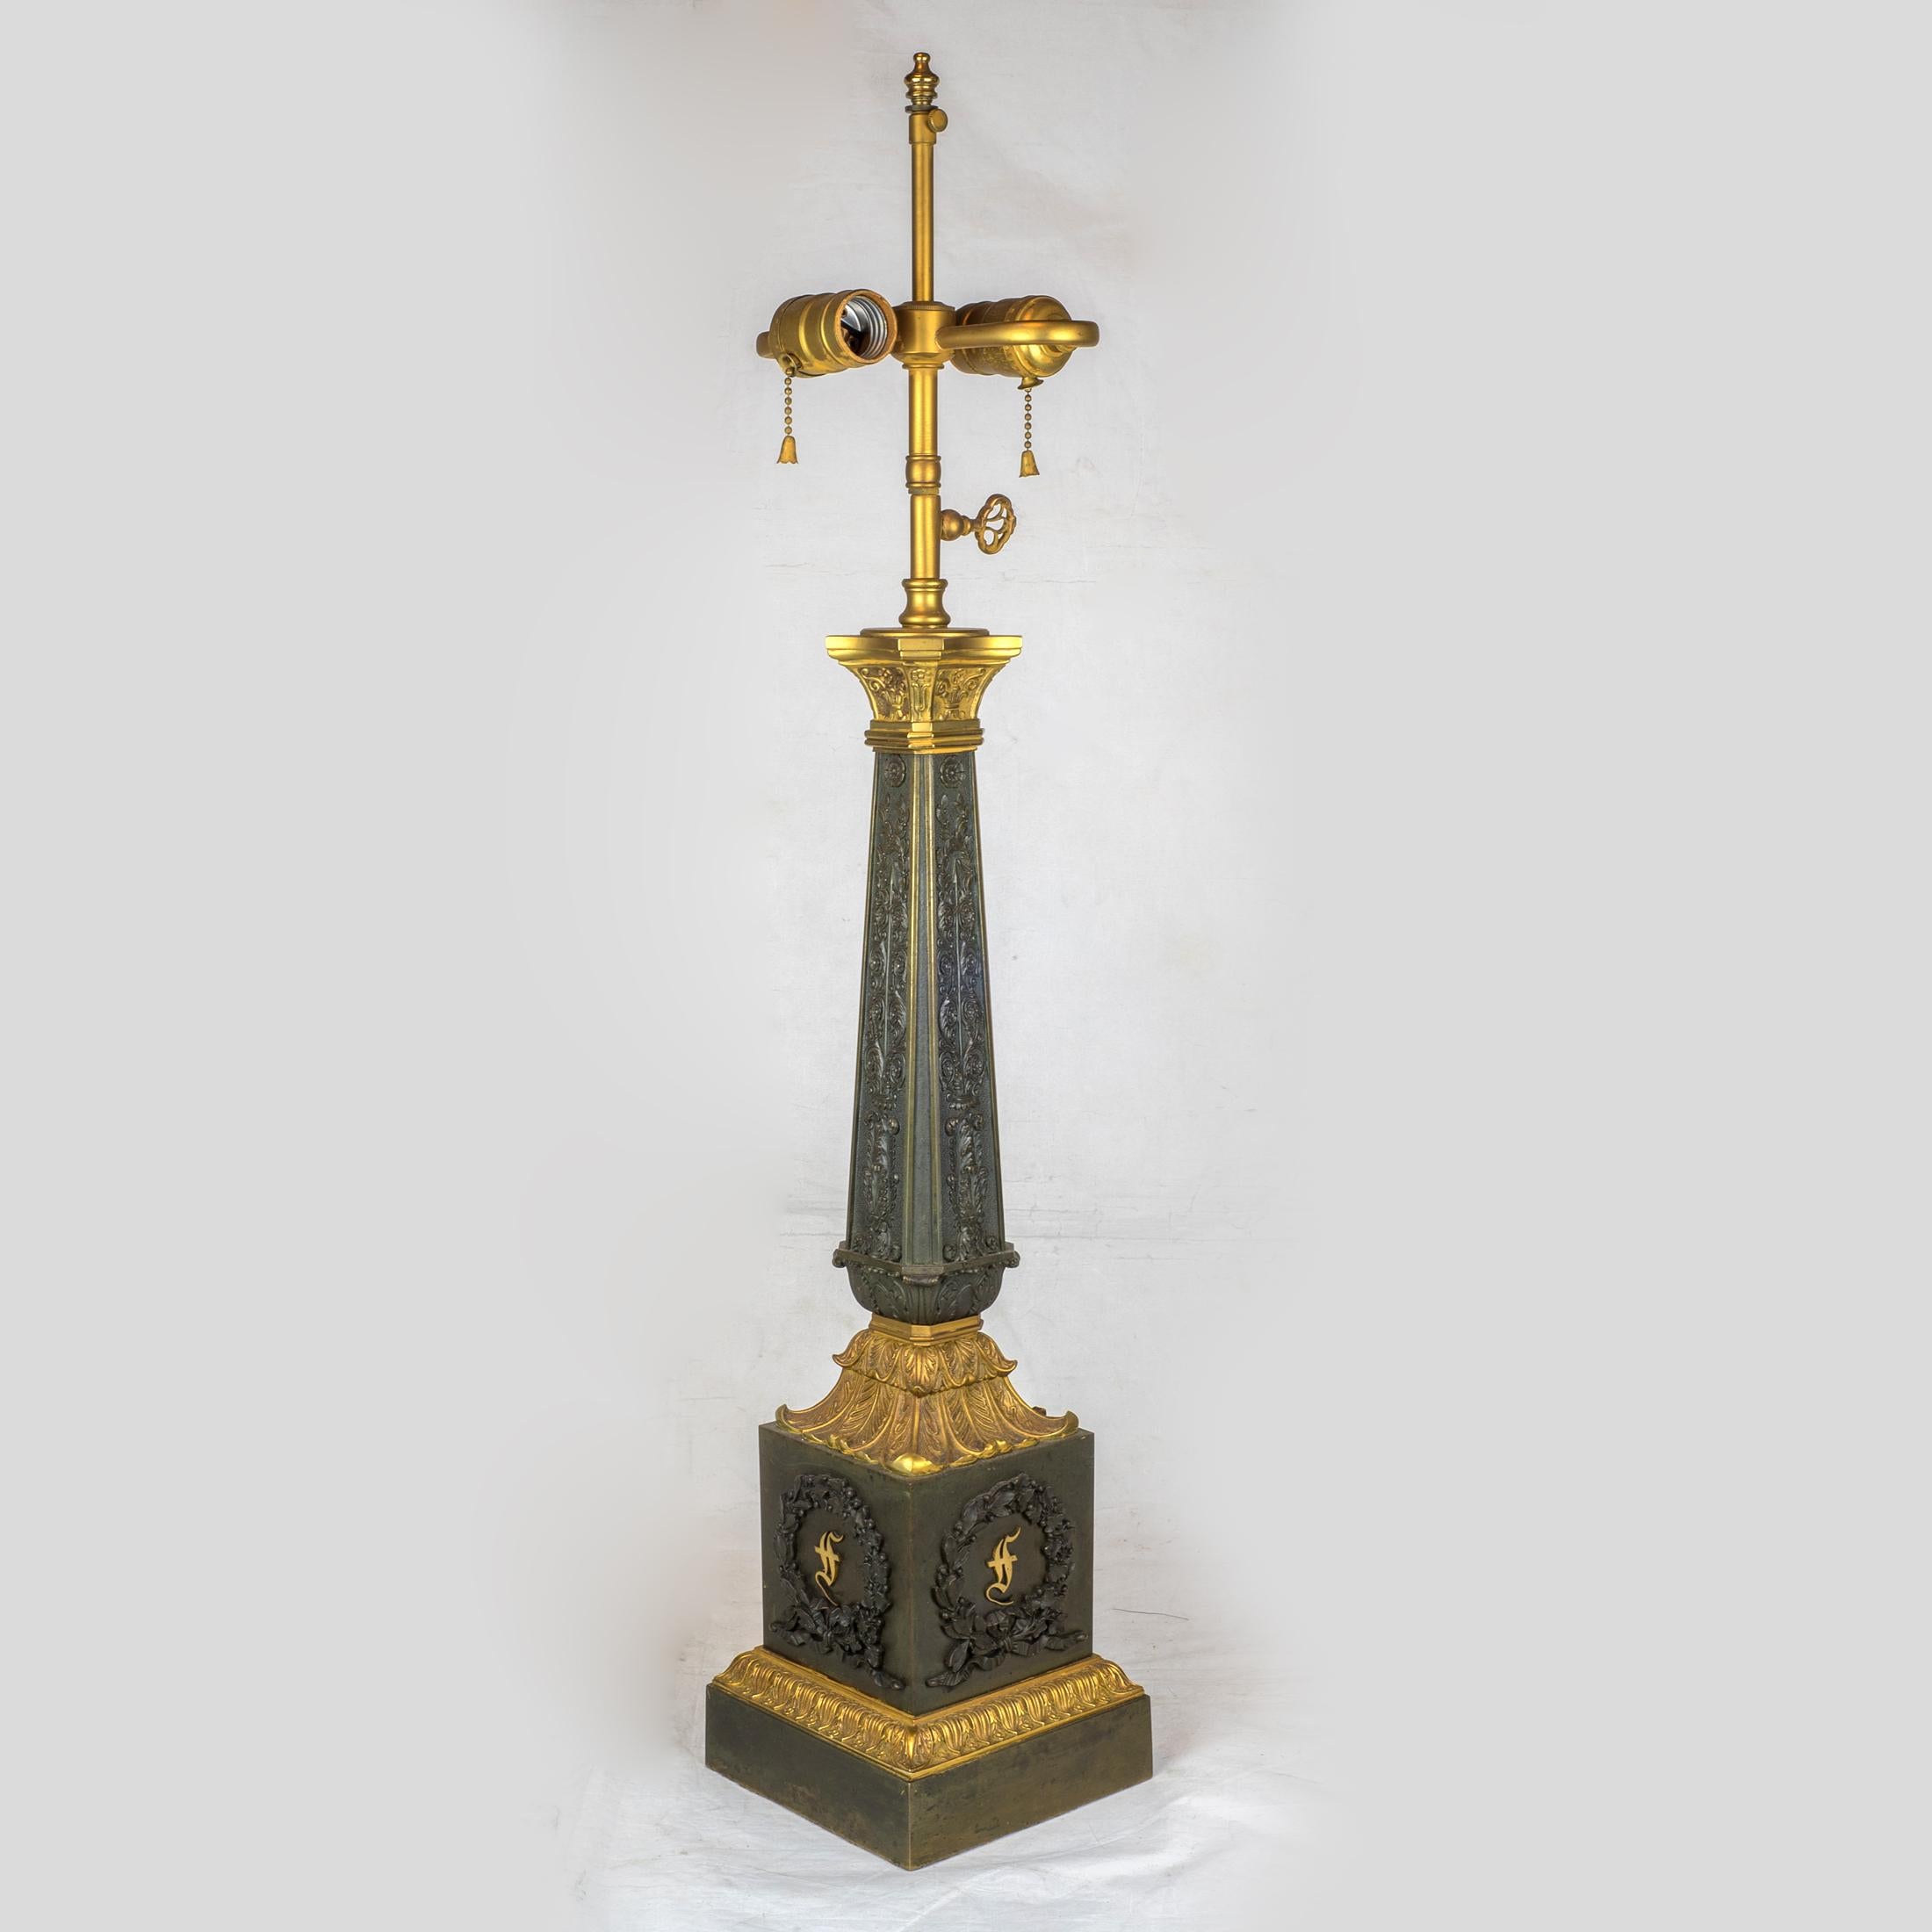 Paire de lampes très décoratives en bronze doré et bronze patiné de style Empire français du XIXe siècle, sur base carrée. Chacune des quatre faces de la base est ornée d'un motif de récif. Le reste de la lampe est recouvert de scènes